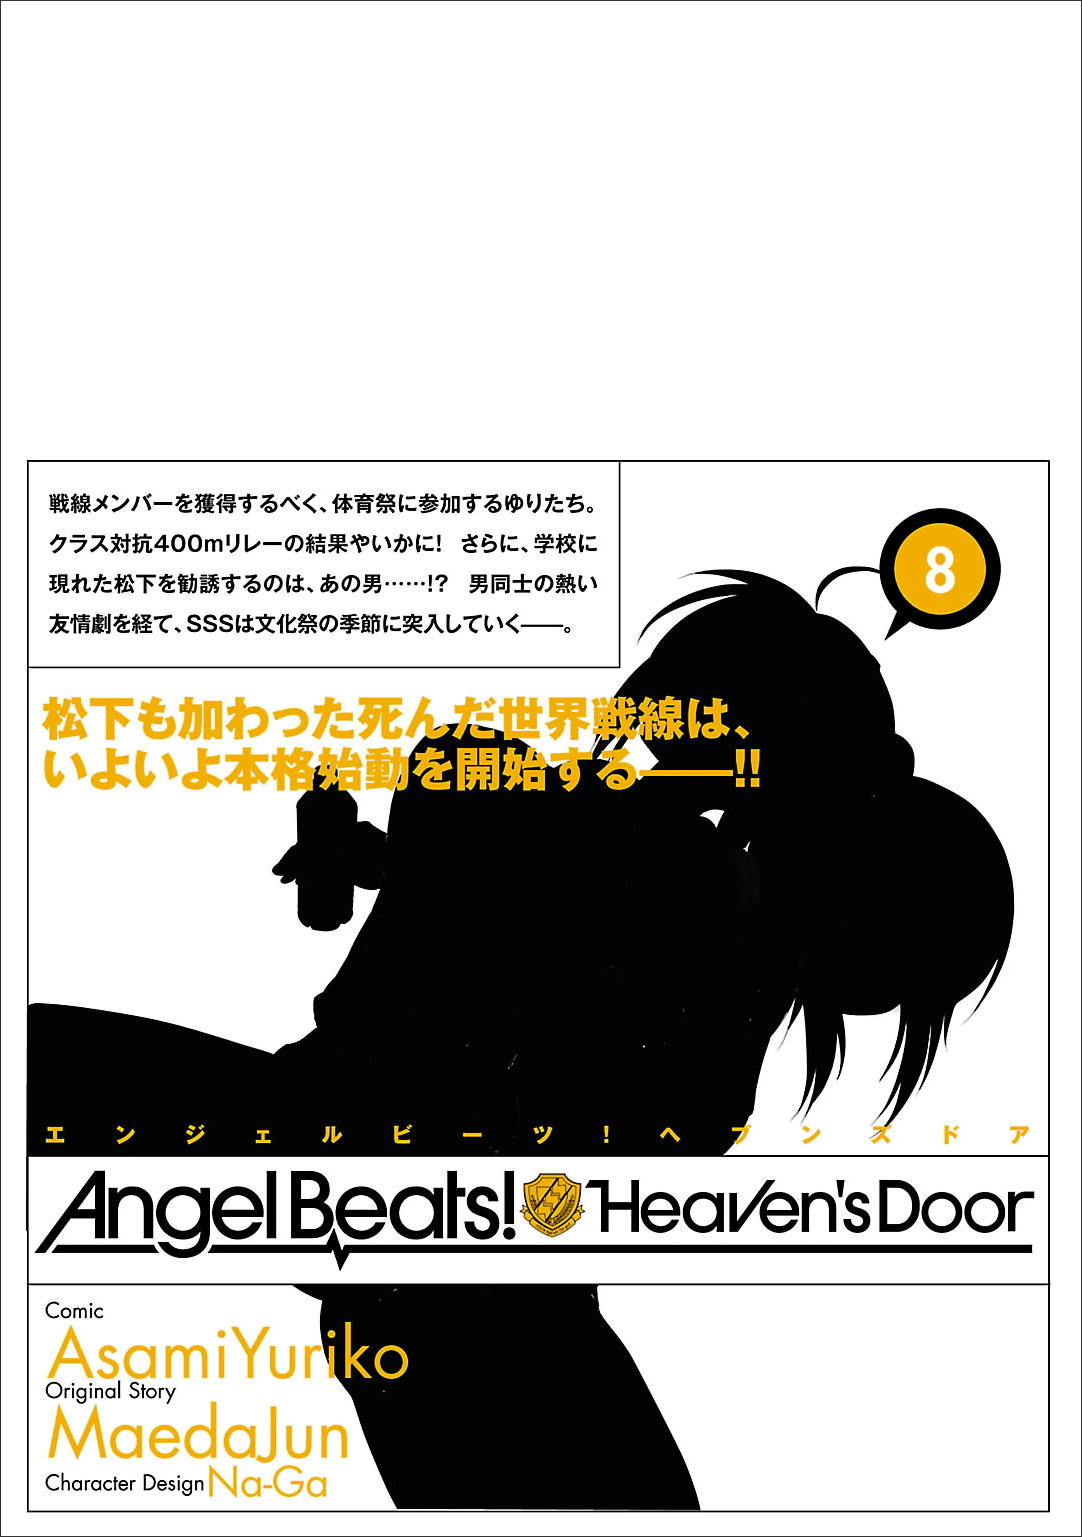 Angel Beats! Heaven's Door Vol. 8 Ch. 53.5 Omake